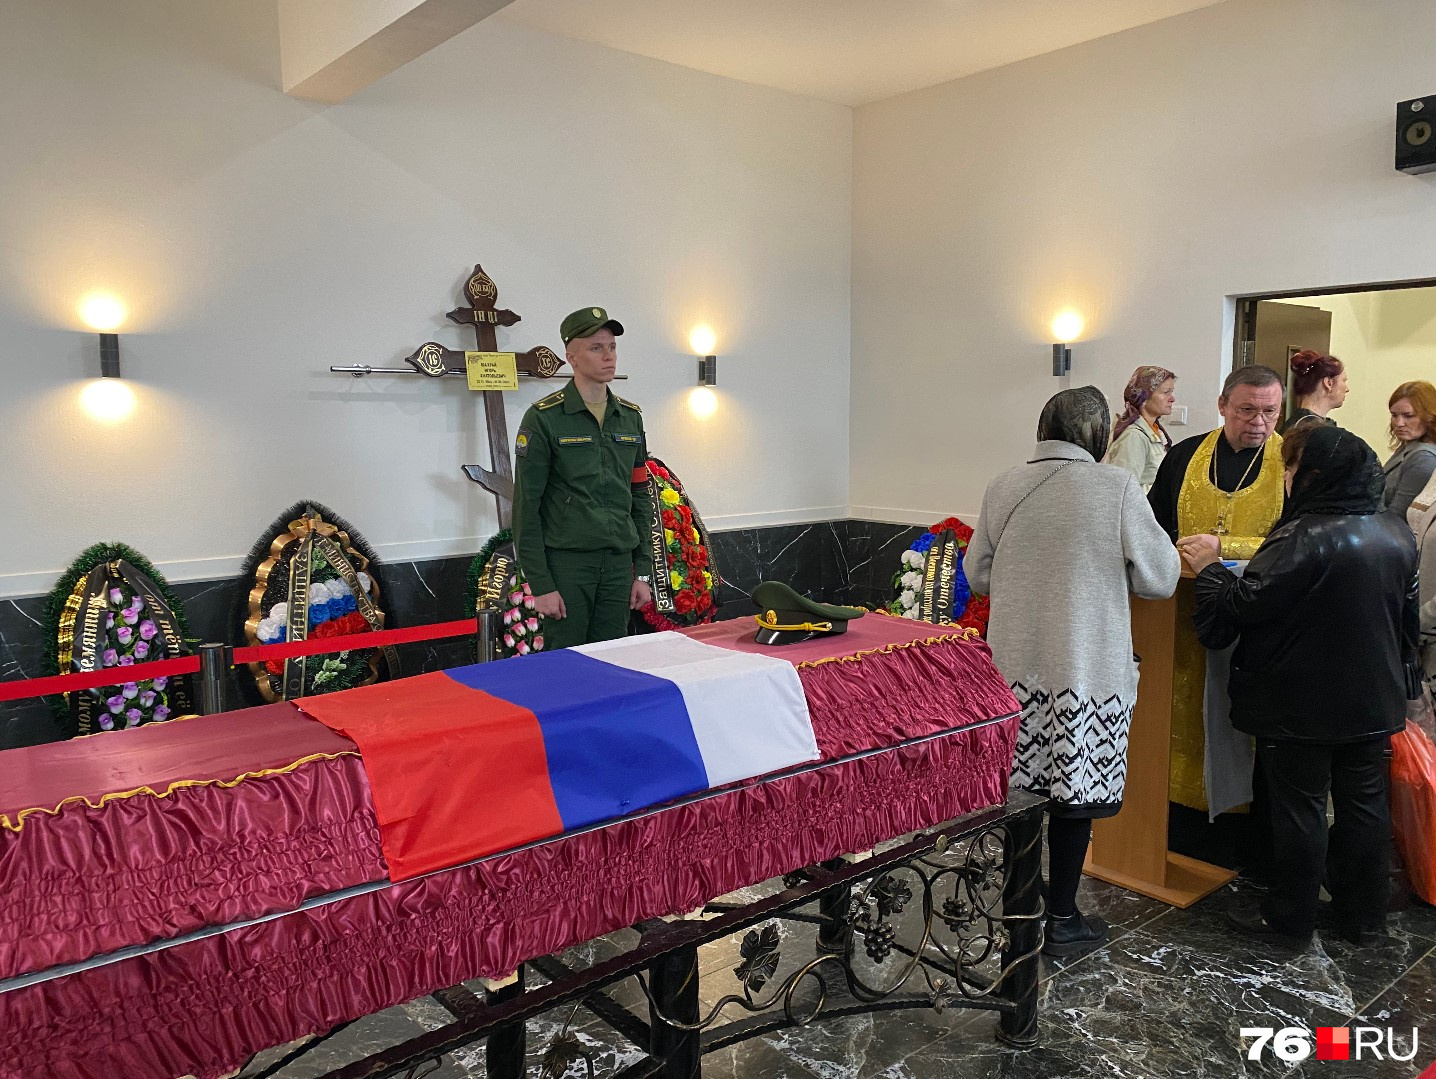 Похоронен в ярославле. В Ярославле простились. Как положить флаг на гроб. Гроб с флагом США. Фото героя России в гробу с флагом России.